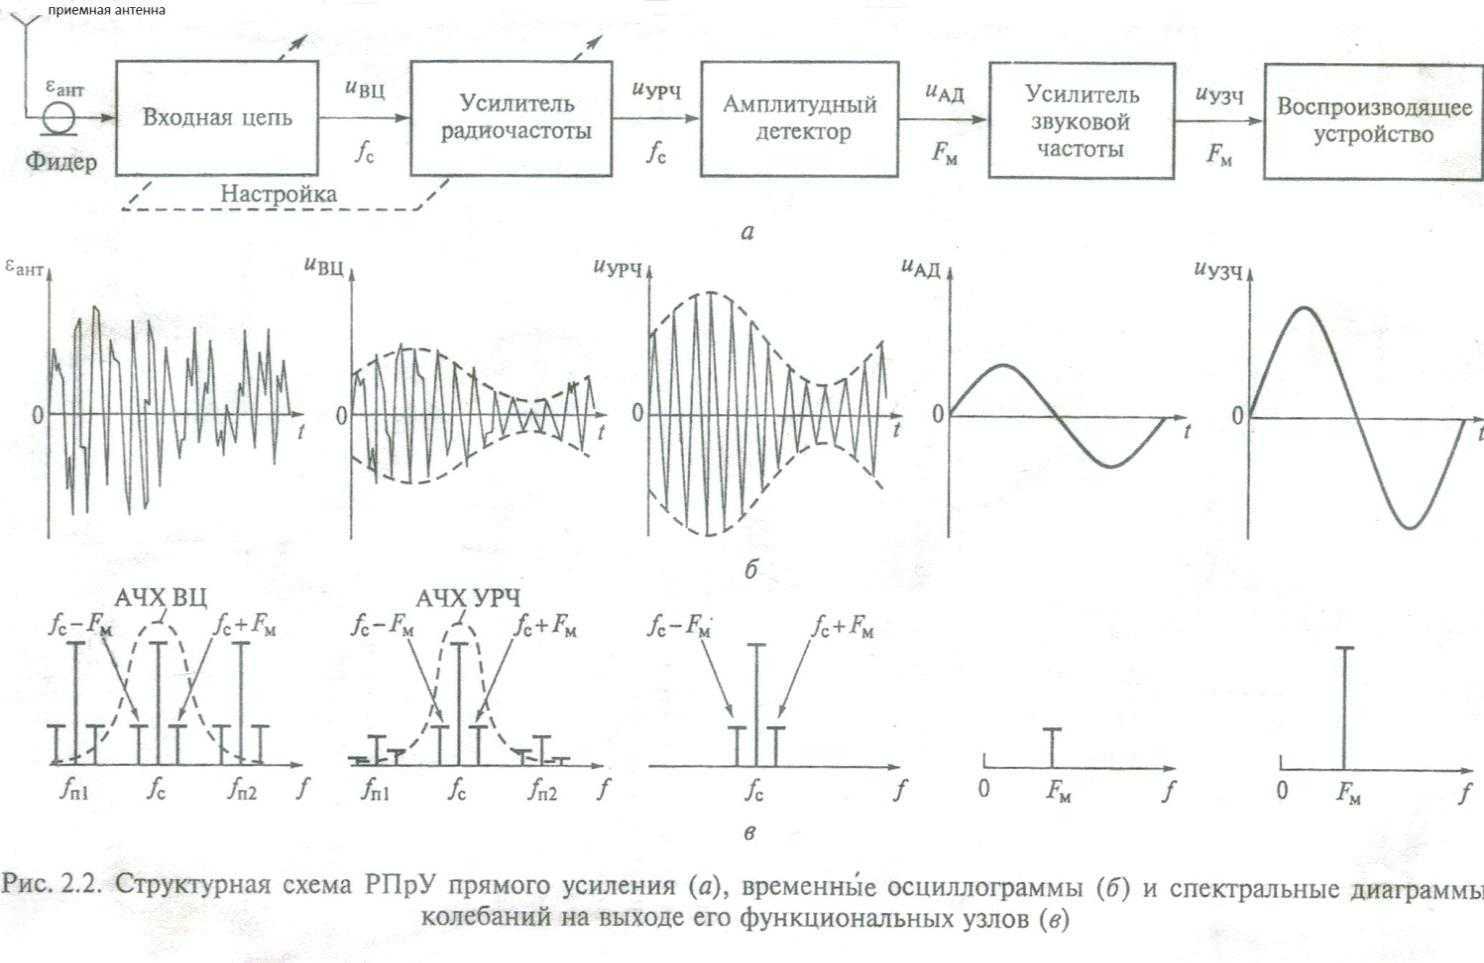 Как использовать диаграмму найквиста (амплитудно-фазовую частотную характеристику) для частотного анализа